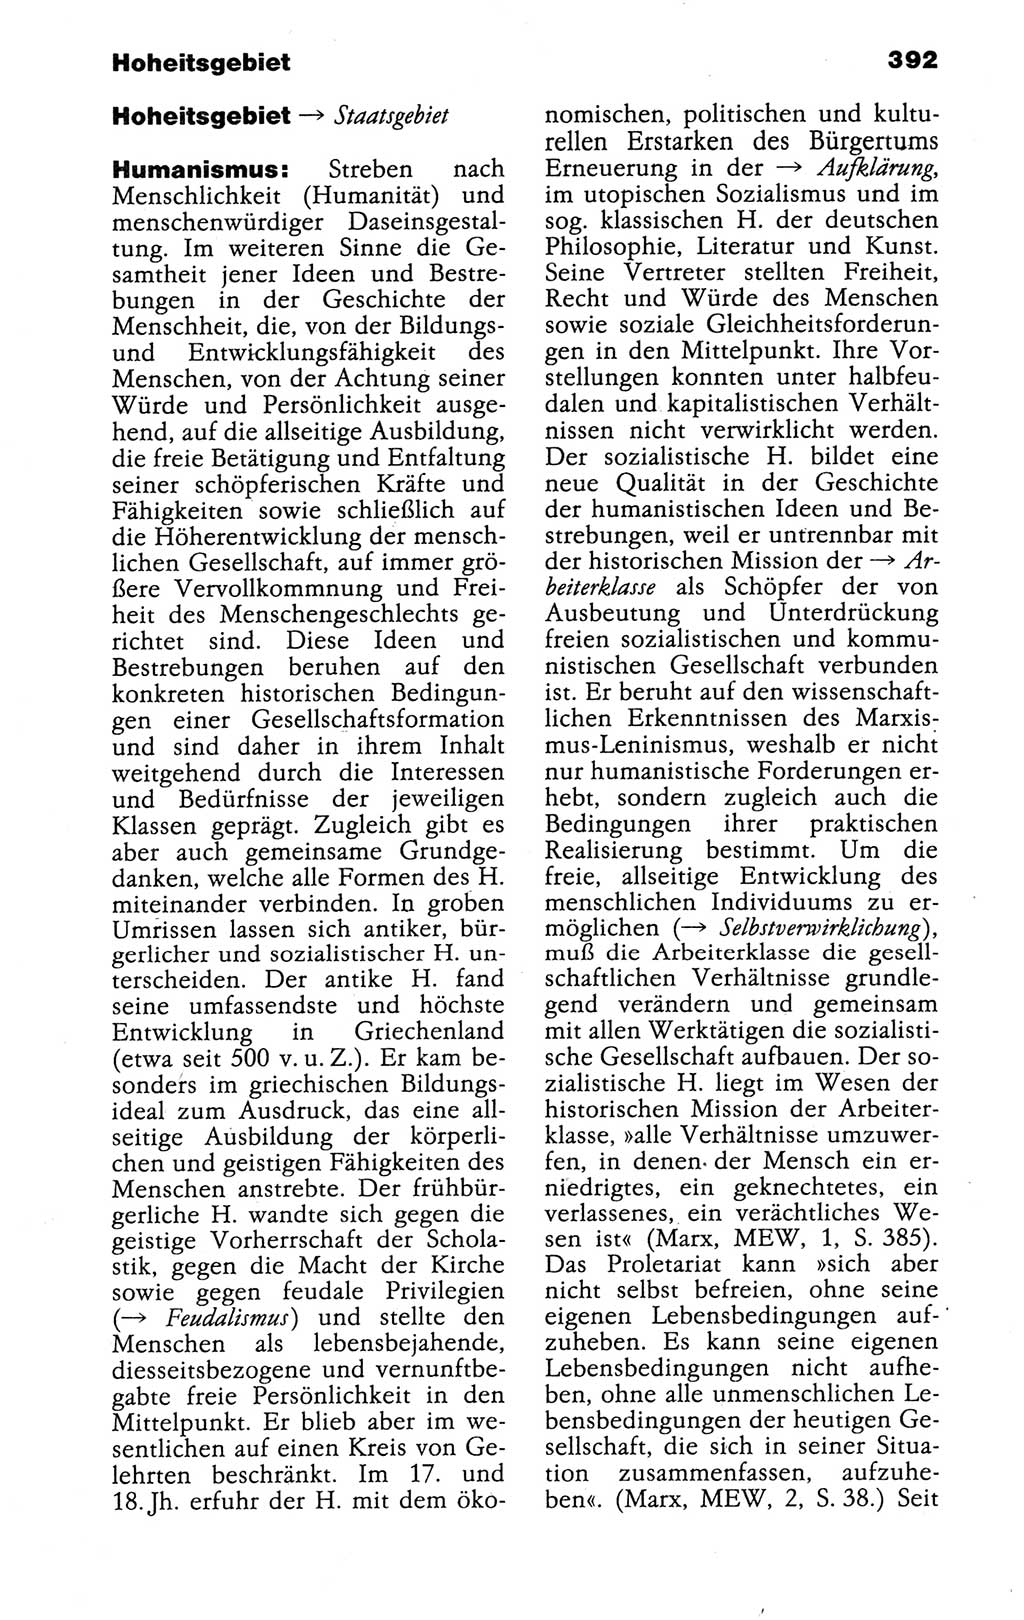 Kleines politisches Wörterbuch [Deutsche Demokratische Republik (DDR)] 1988, Seite 392 (Kl. pol. Wb. DDR 1988, S. 392)